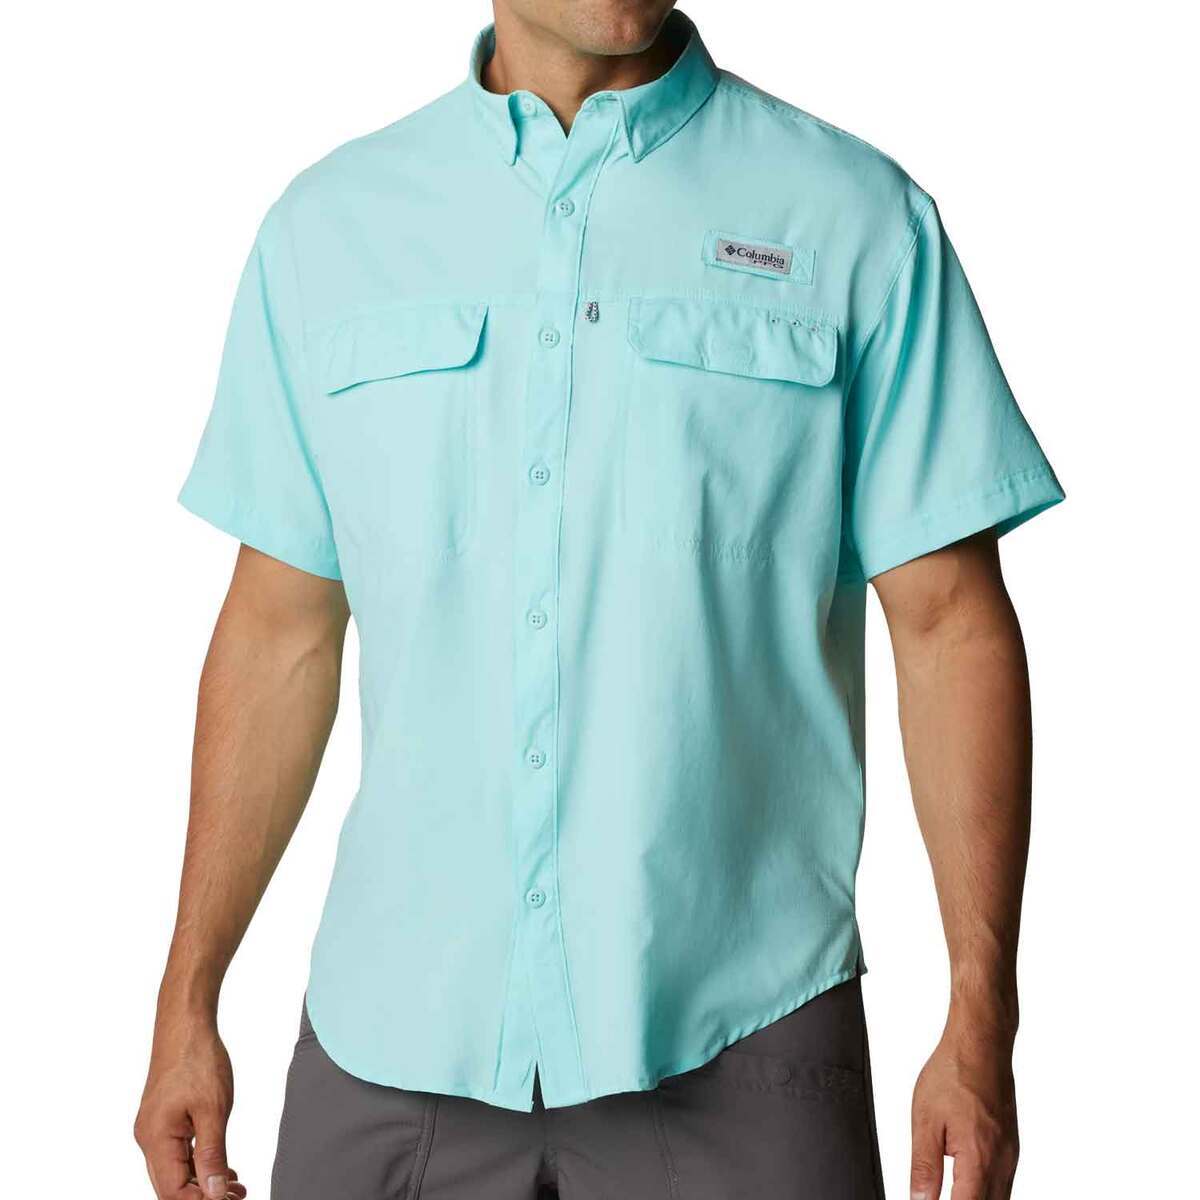 Men's Short Sleeve Fishing Shirt